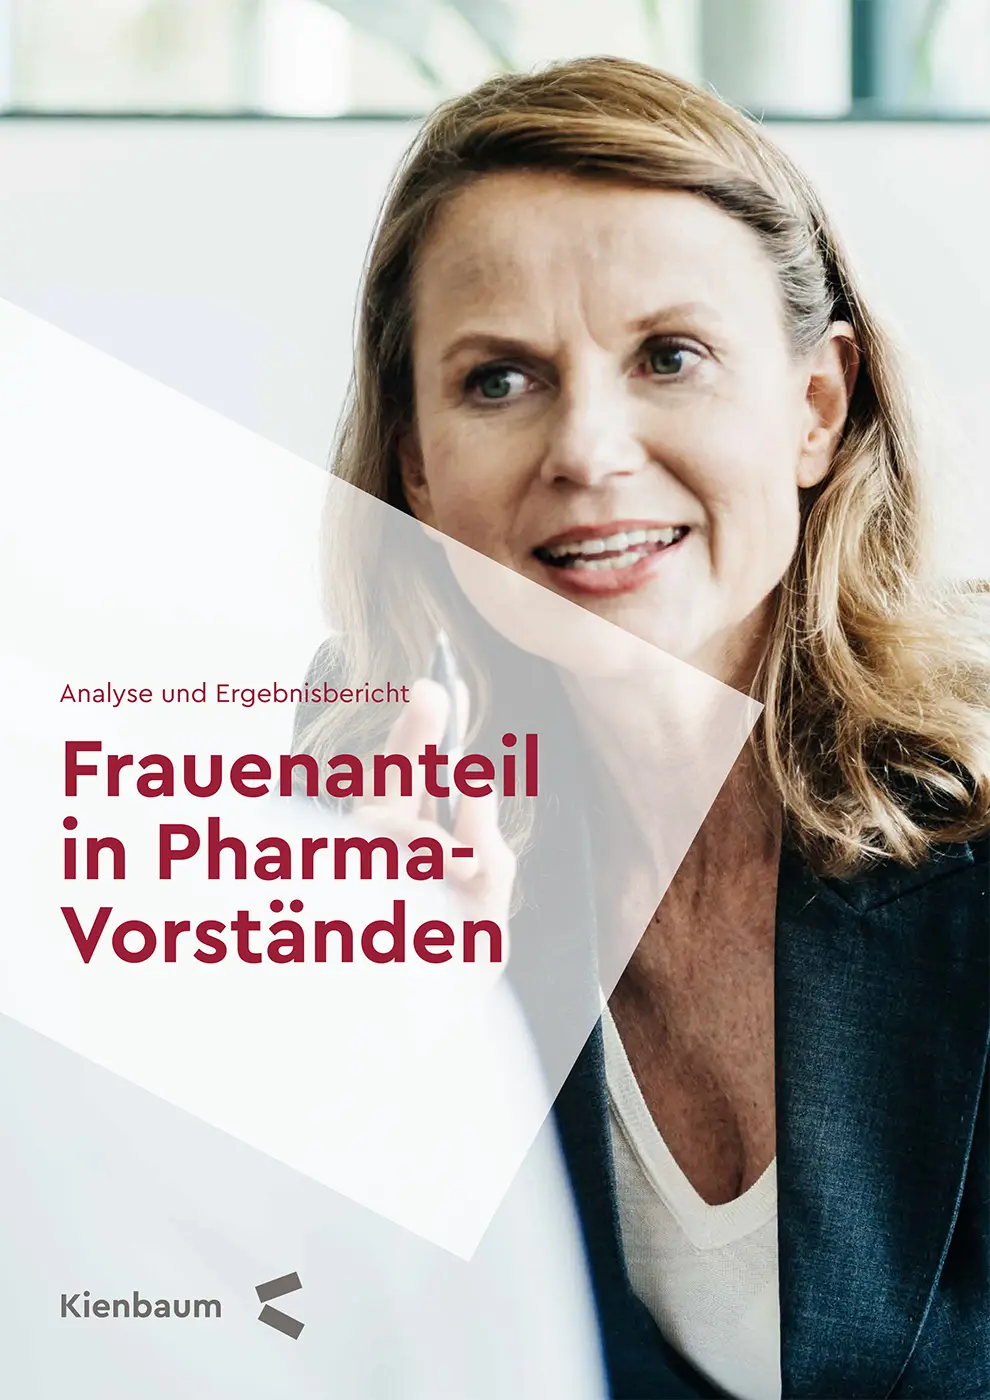 Whitepaper - Frauenanteil in Pharma-Vorständen